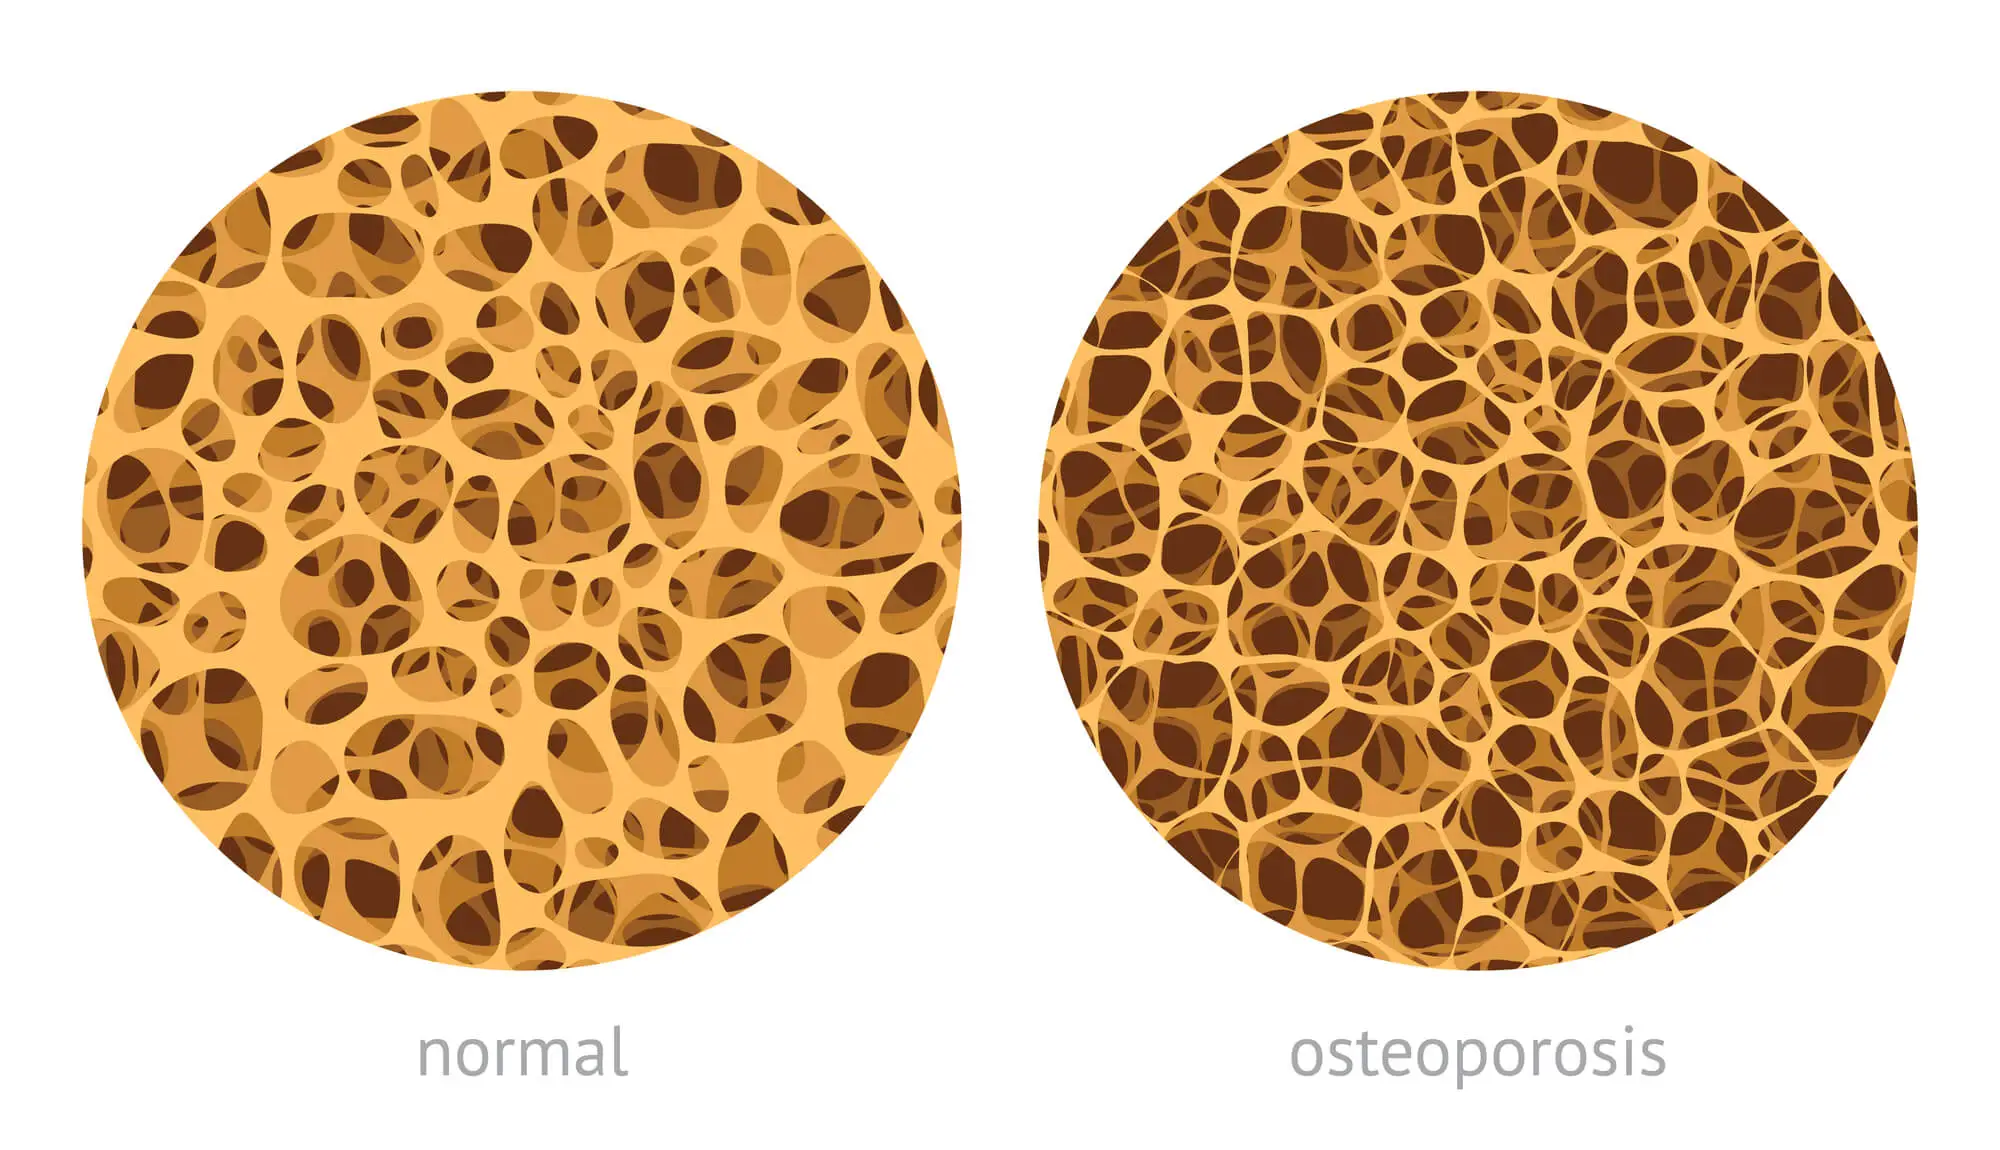 bone density: normal vs osteoporosis